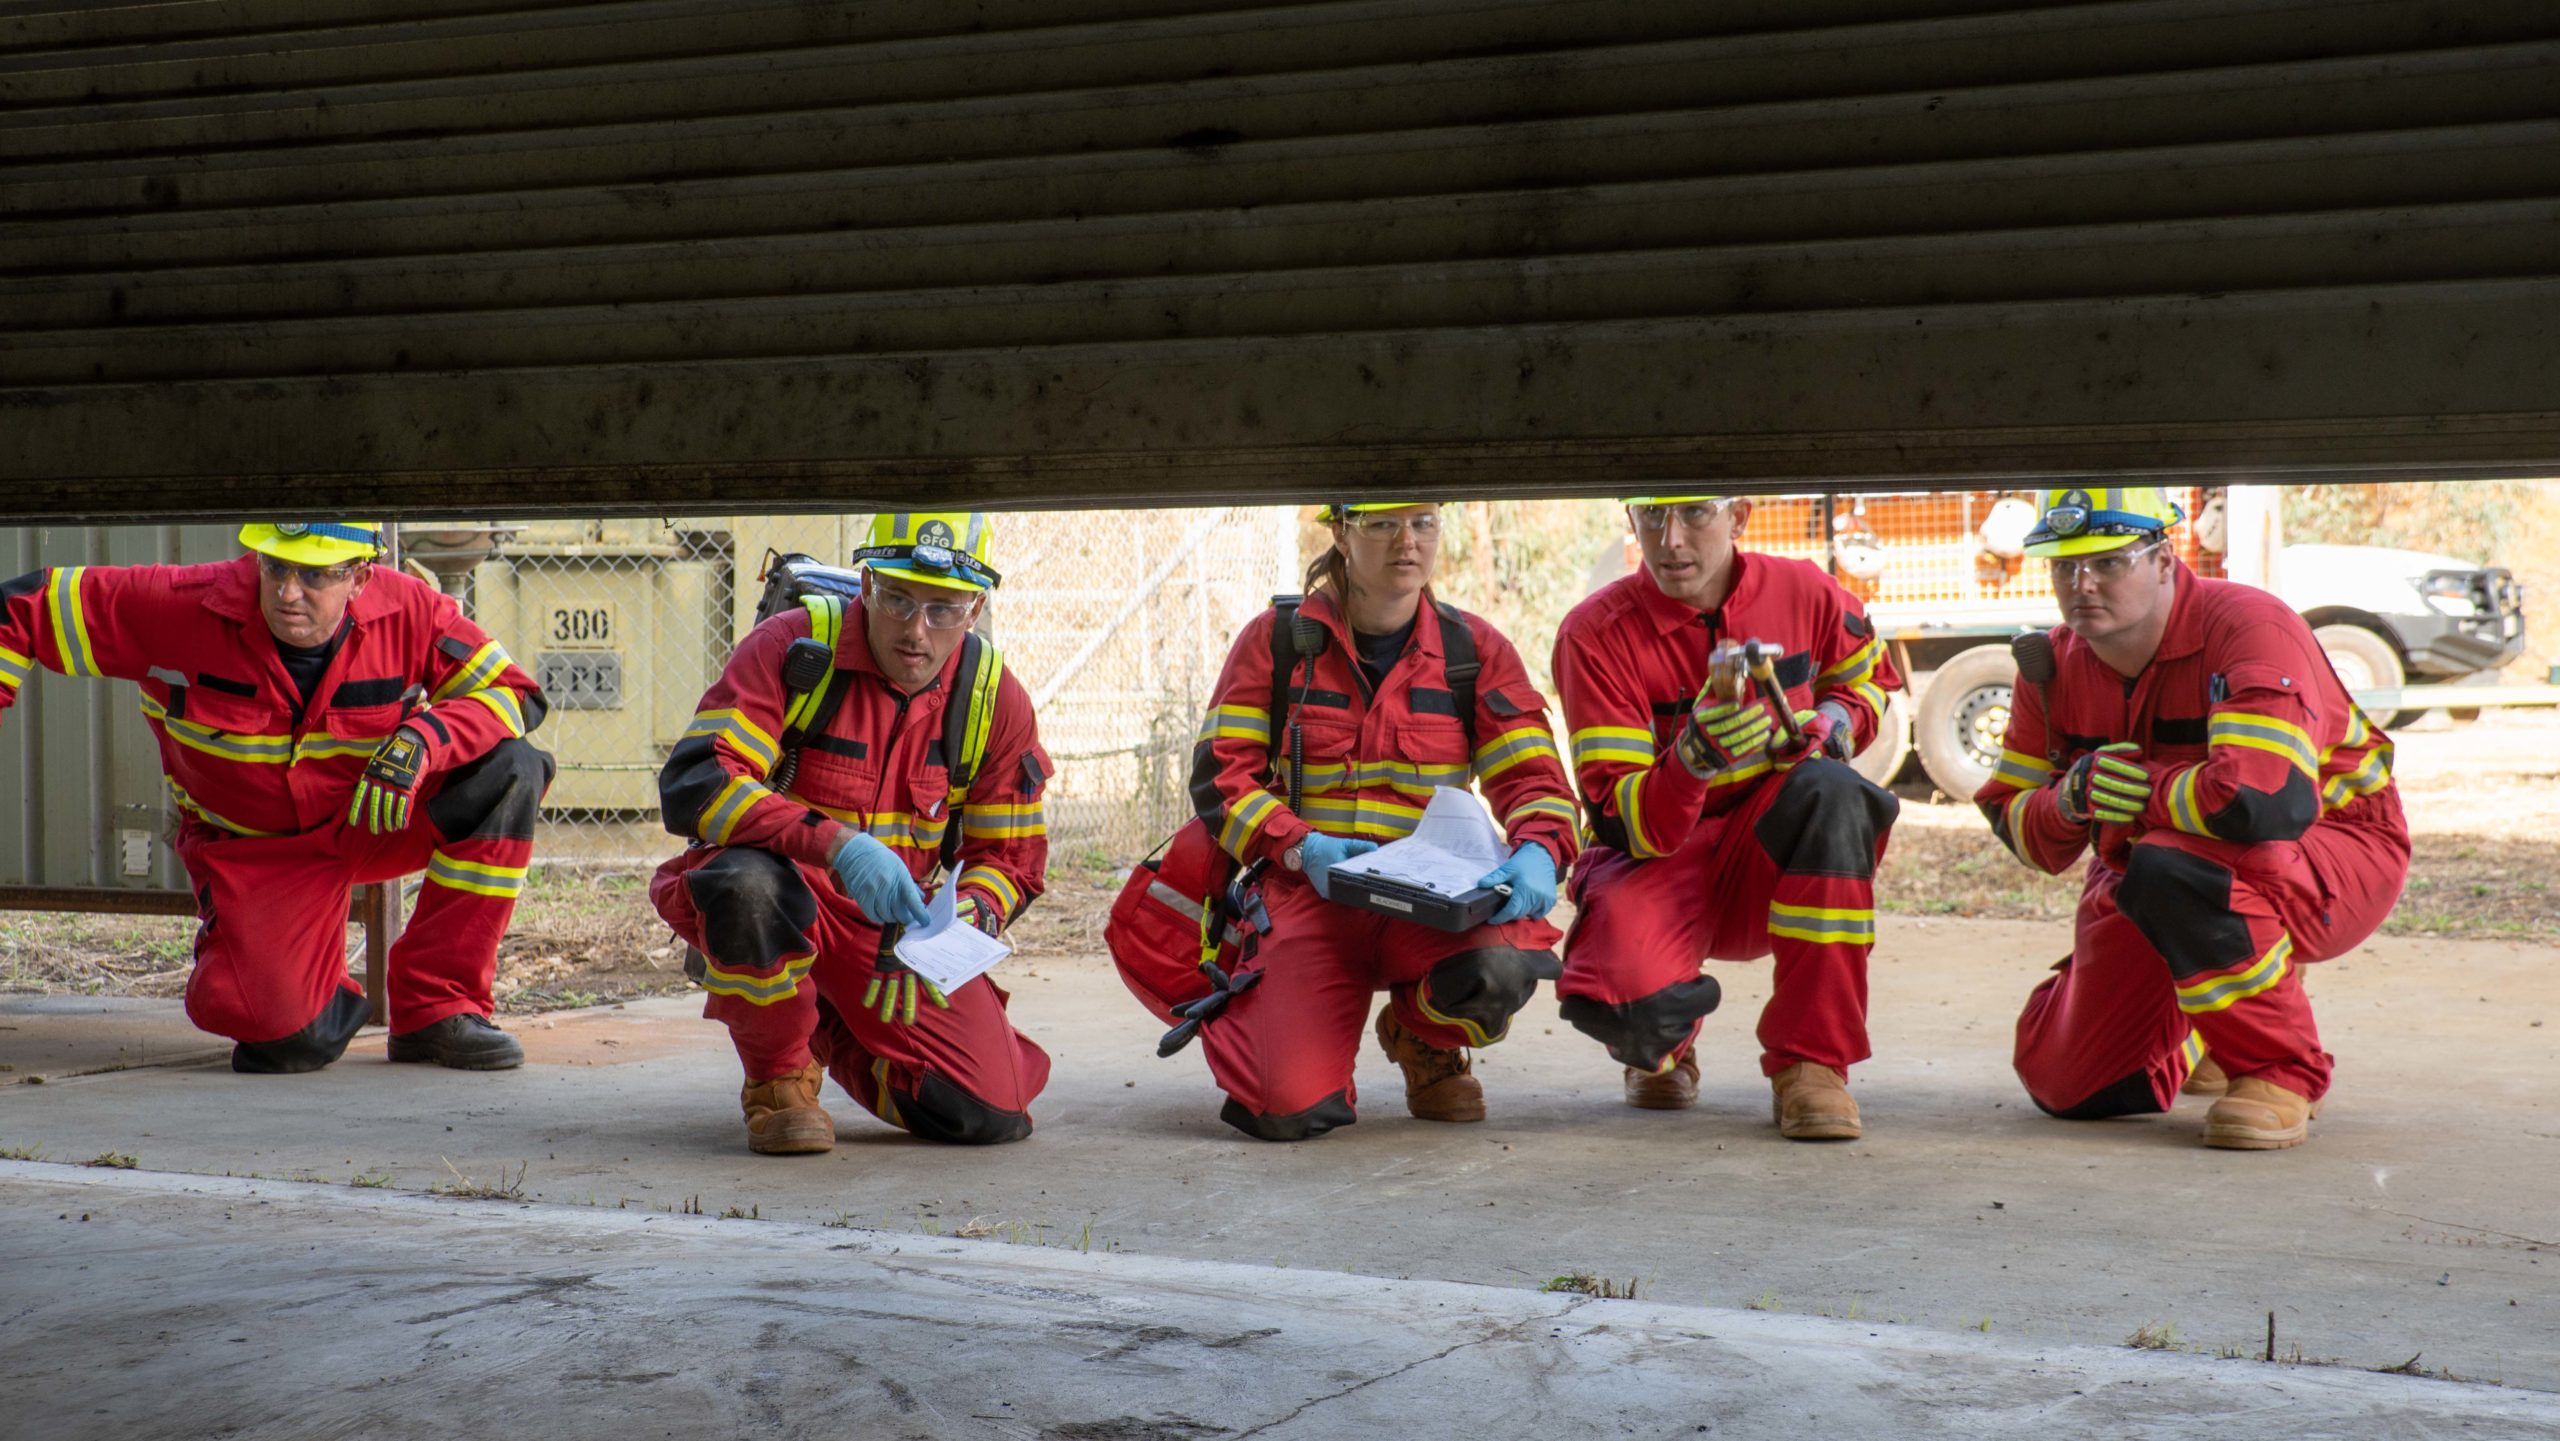 SIMEC की लौह अयस्क आपातकालीन प्रतिक्रिया टीम साबित करती है कि वे किसी भी चुनौती पर निर्भर हैं